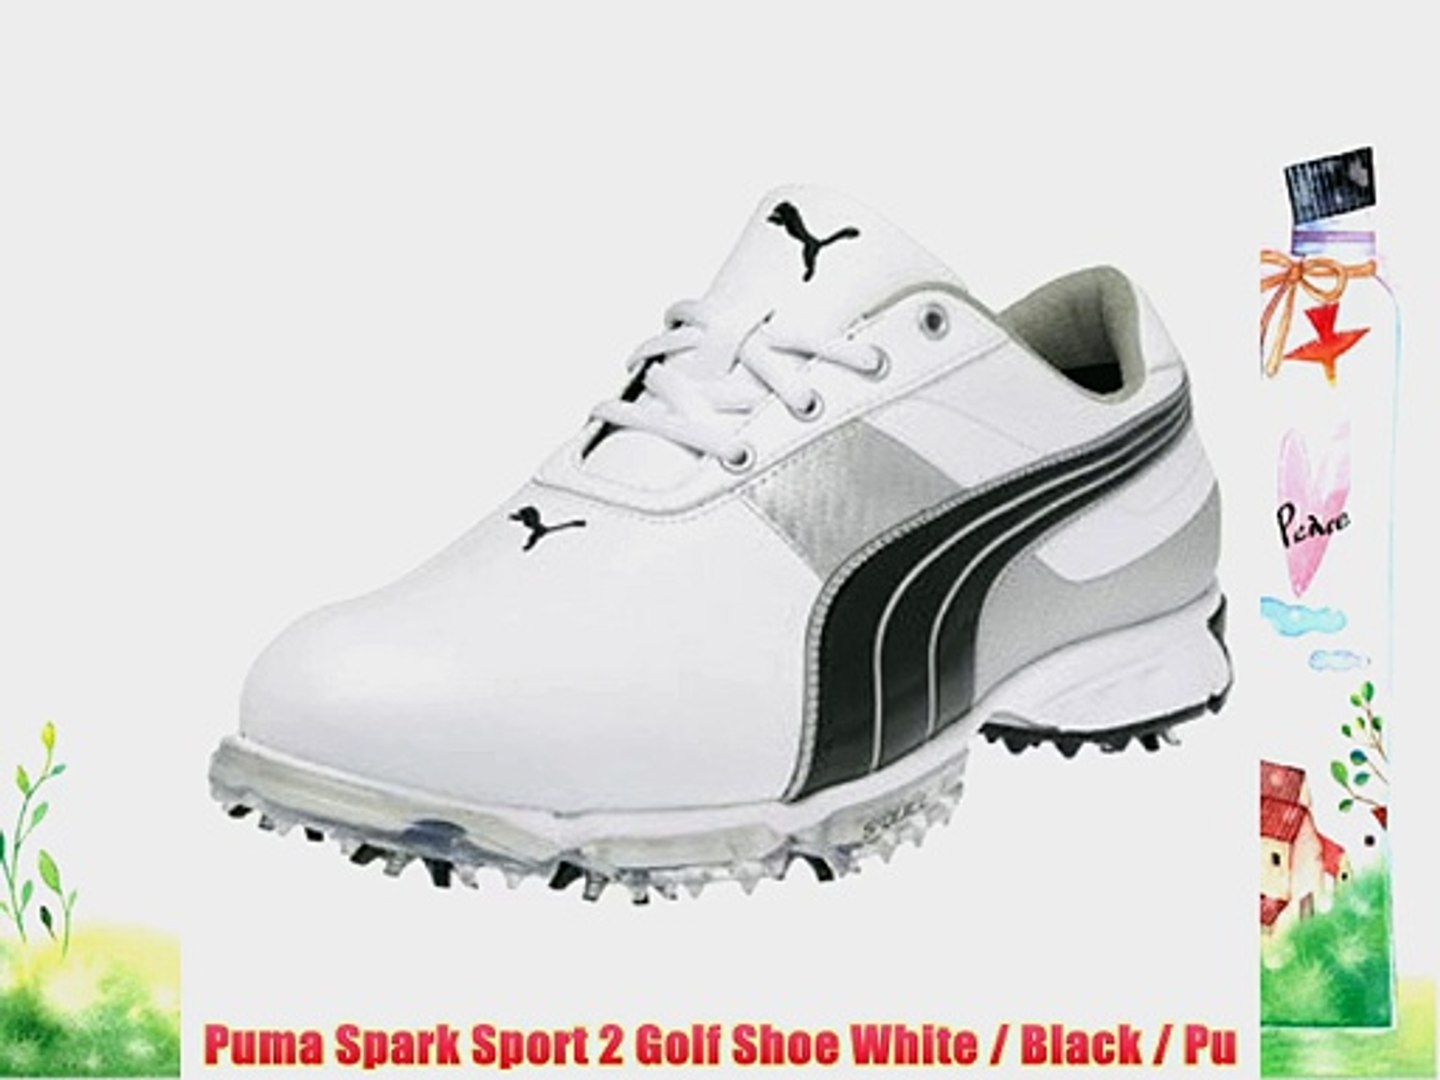 puma spark sport 2 golf shoes